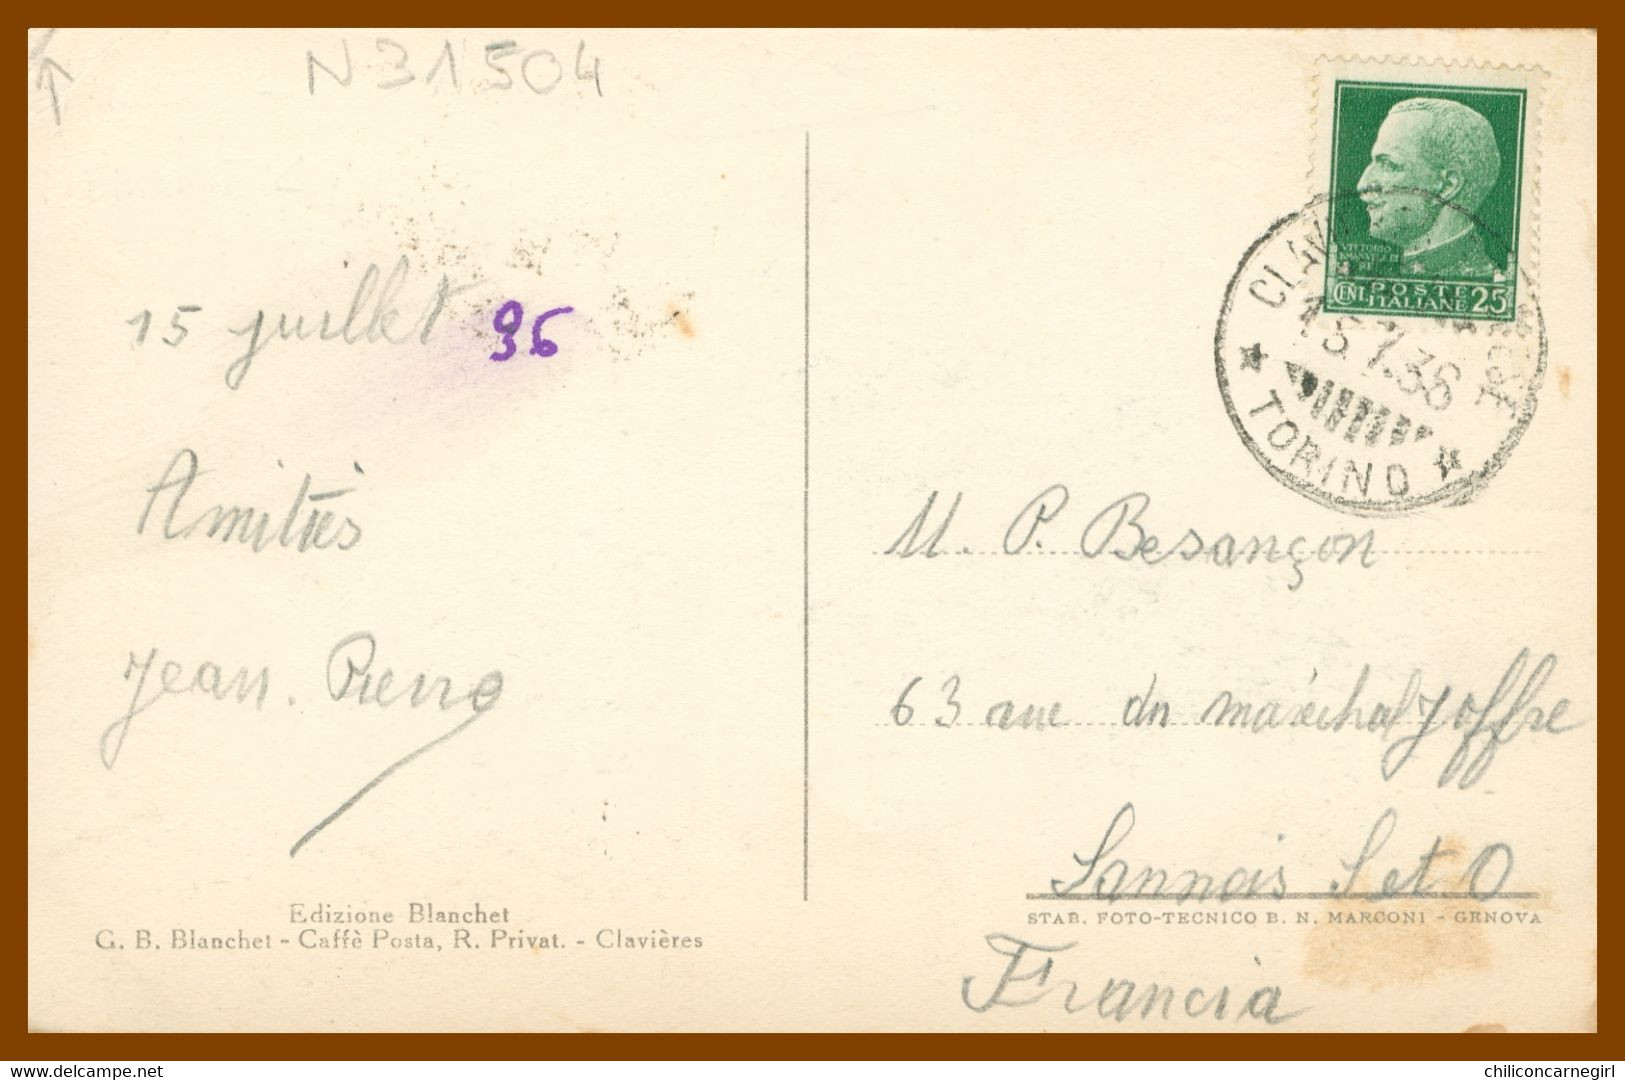 CLAVIERES - Albergo Savoia - Edit. BLANCHET Caffé Posta R. Privat. - Foto MARCONI - 1936 - Bar, Alberghi & Ristoranti